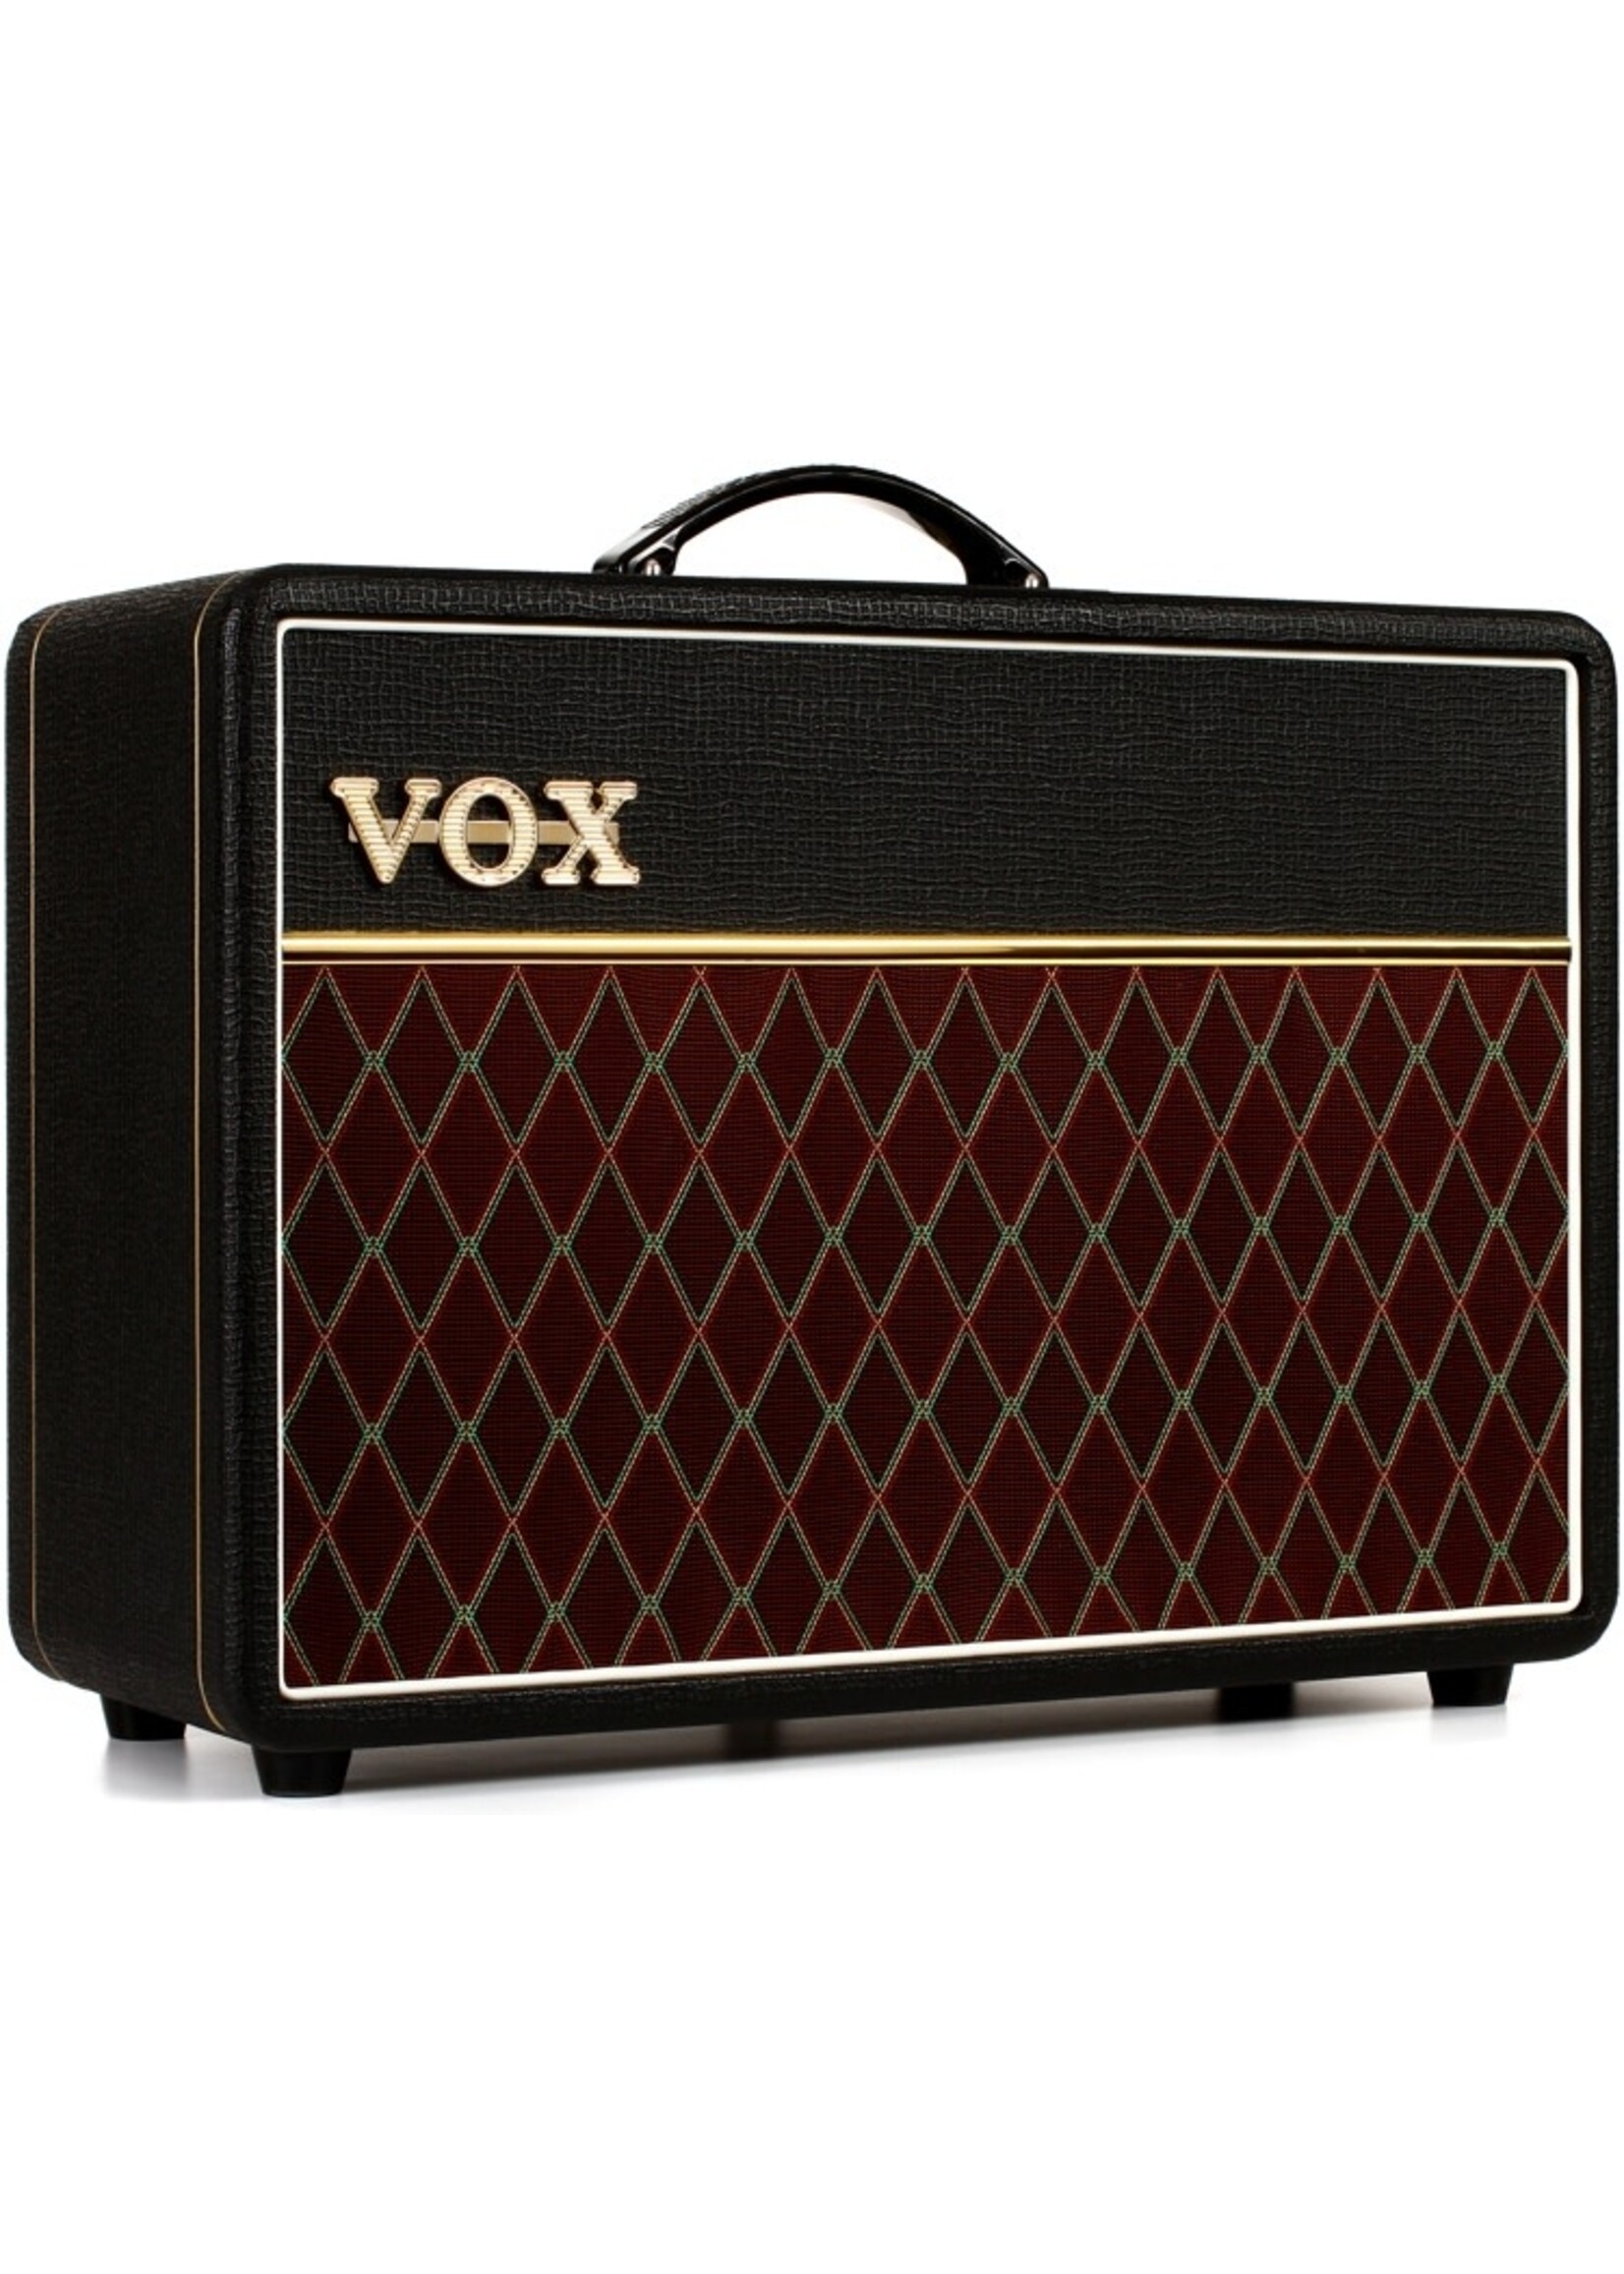 Vox Vox Amplifier Tube Combo AC10 Custom